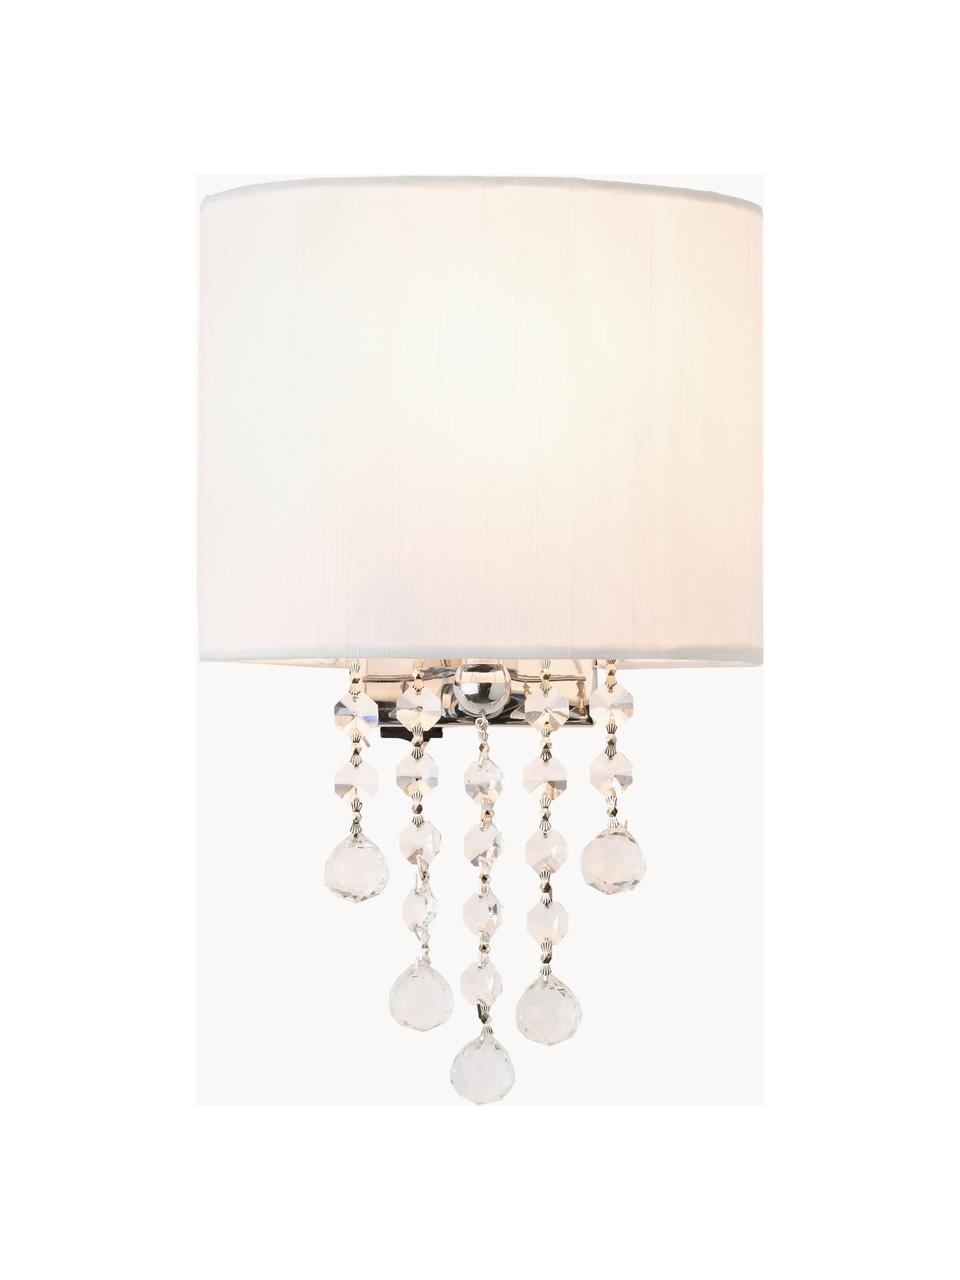 Kristalglazen wandlamp Nora met schakelaar, Lampenkap: textiel, Decoratie: kristalglas, Wit, B 18 x H 27 cm